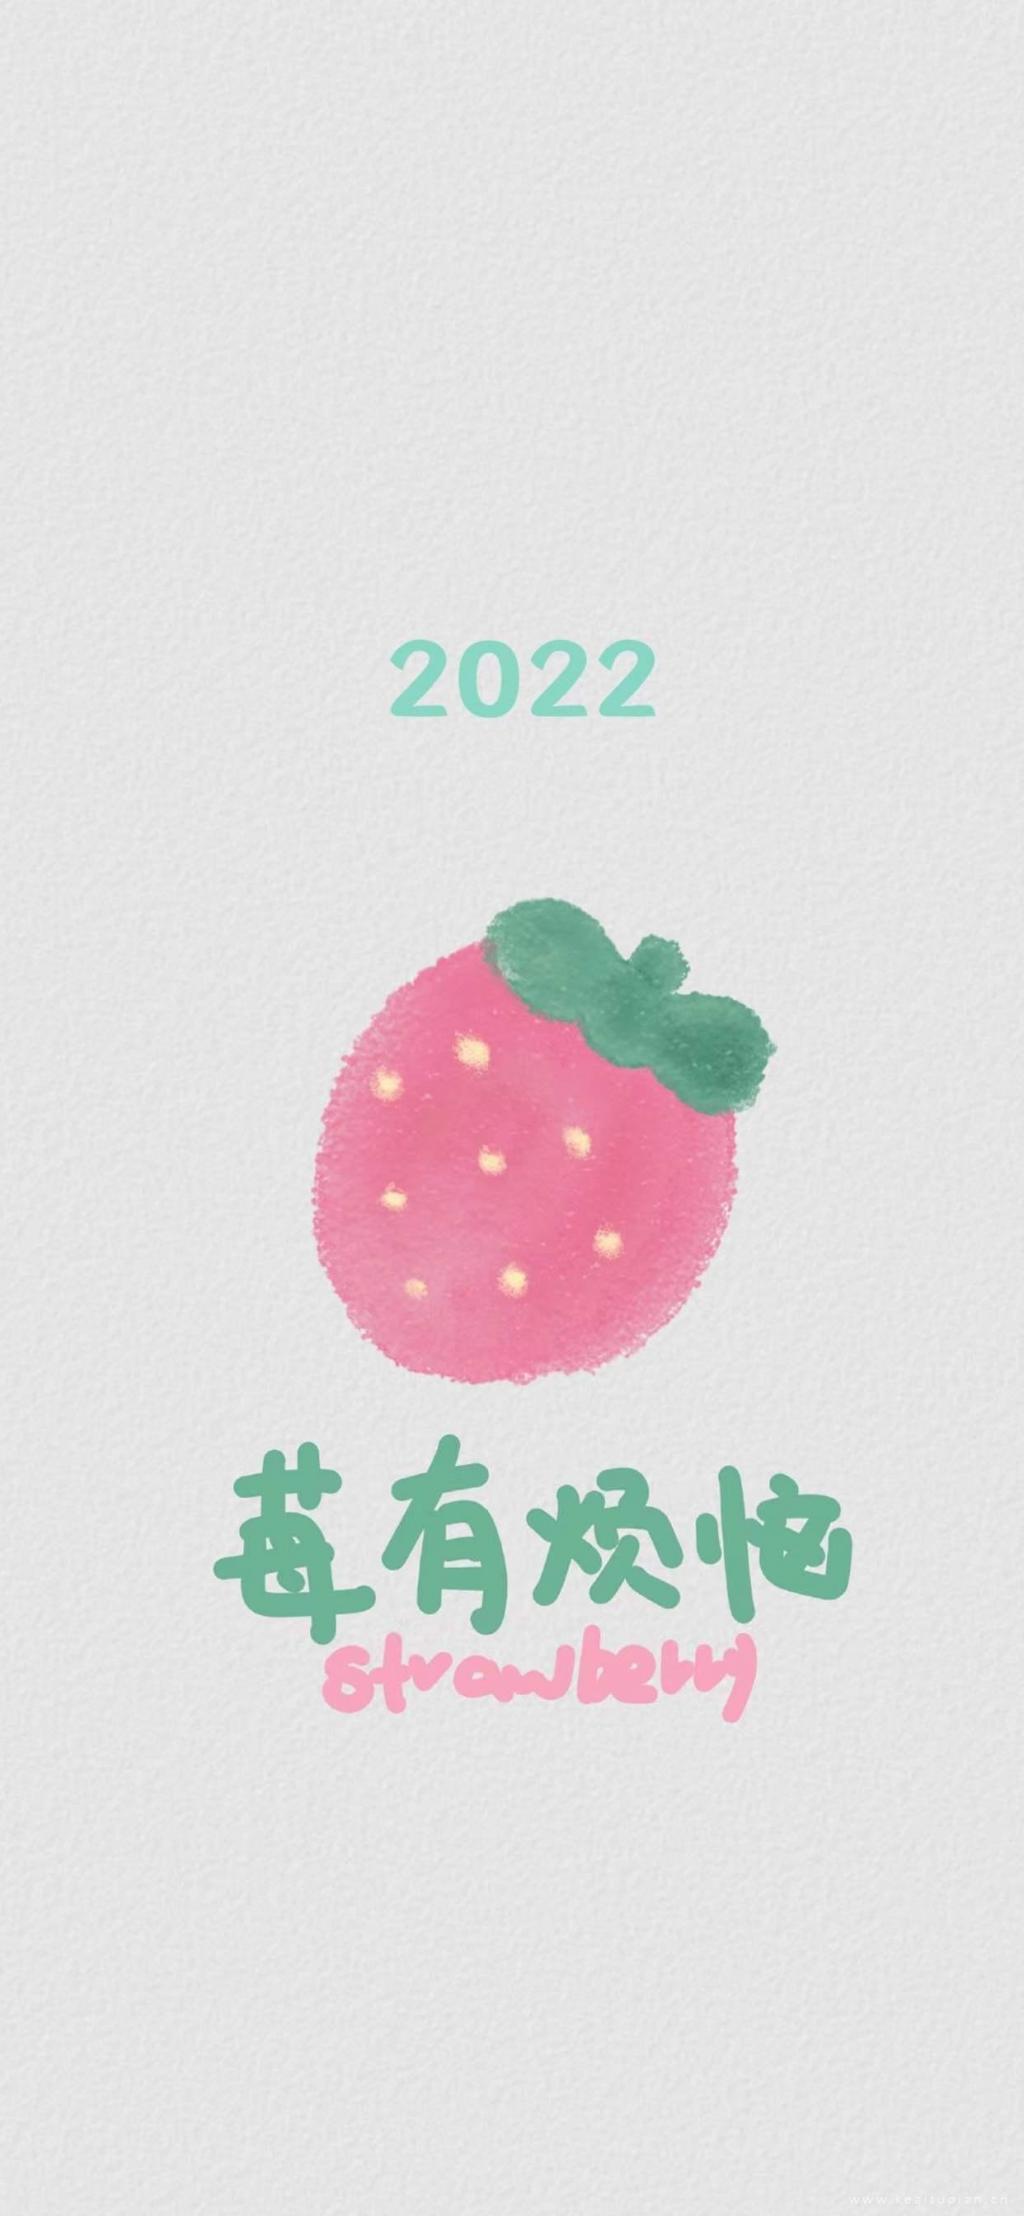 最新简单可爱手机壁纸图片2022莓有烦恼